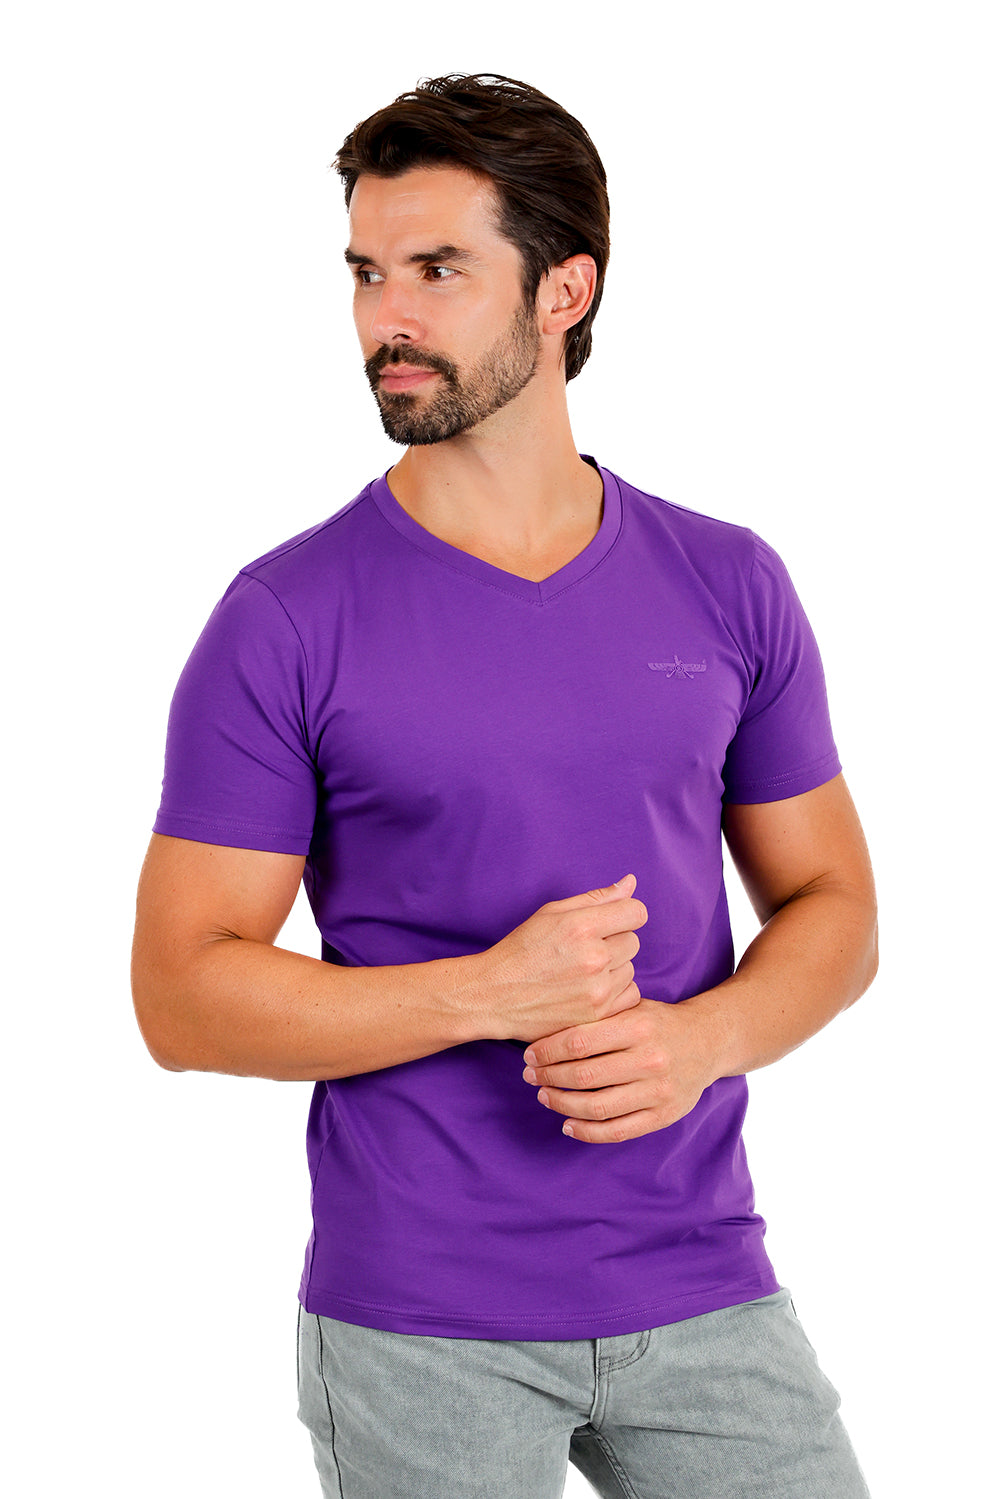 BARABAS Men's Solid Color V-neck T-shirts TV216 Purple